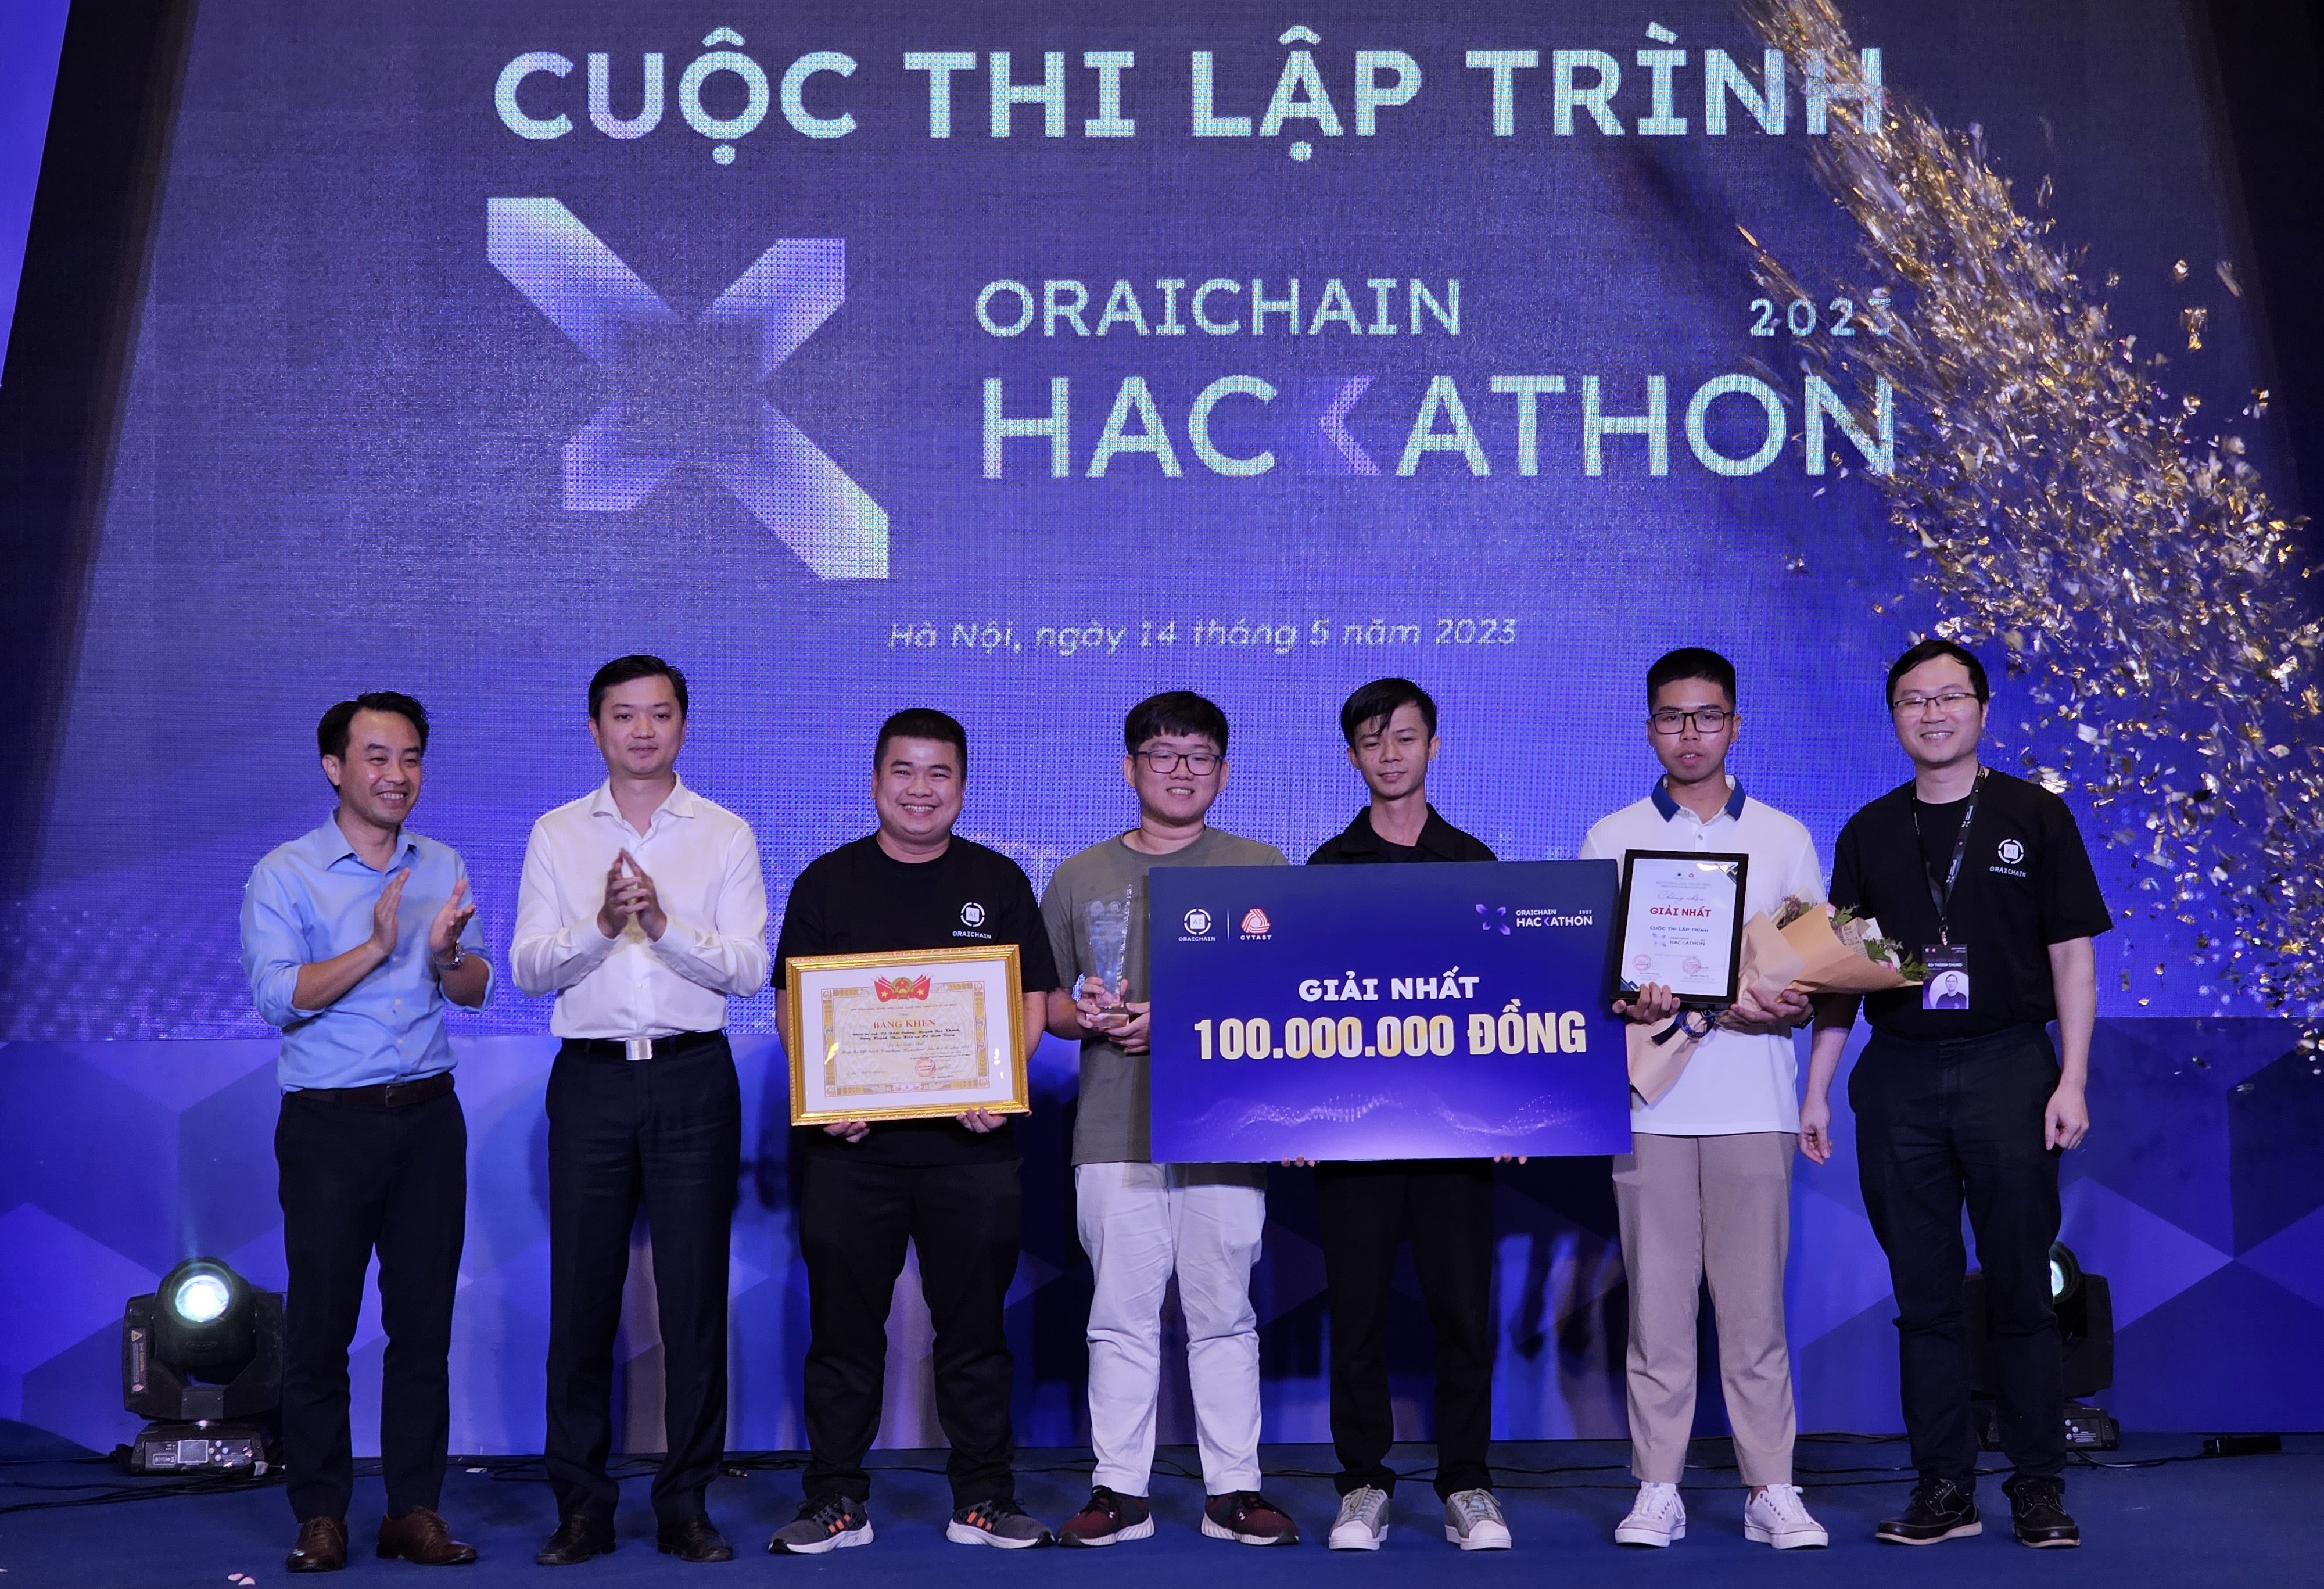 Nền tảng khoa học phi tập trung đạt giải nhất thi lập trình Oraichain Hackathon